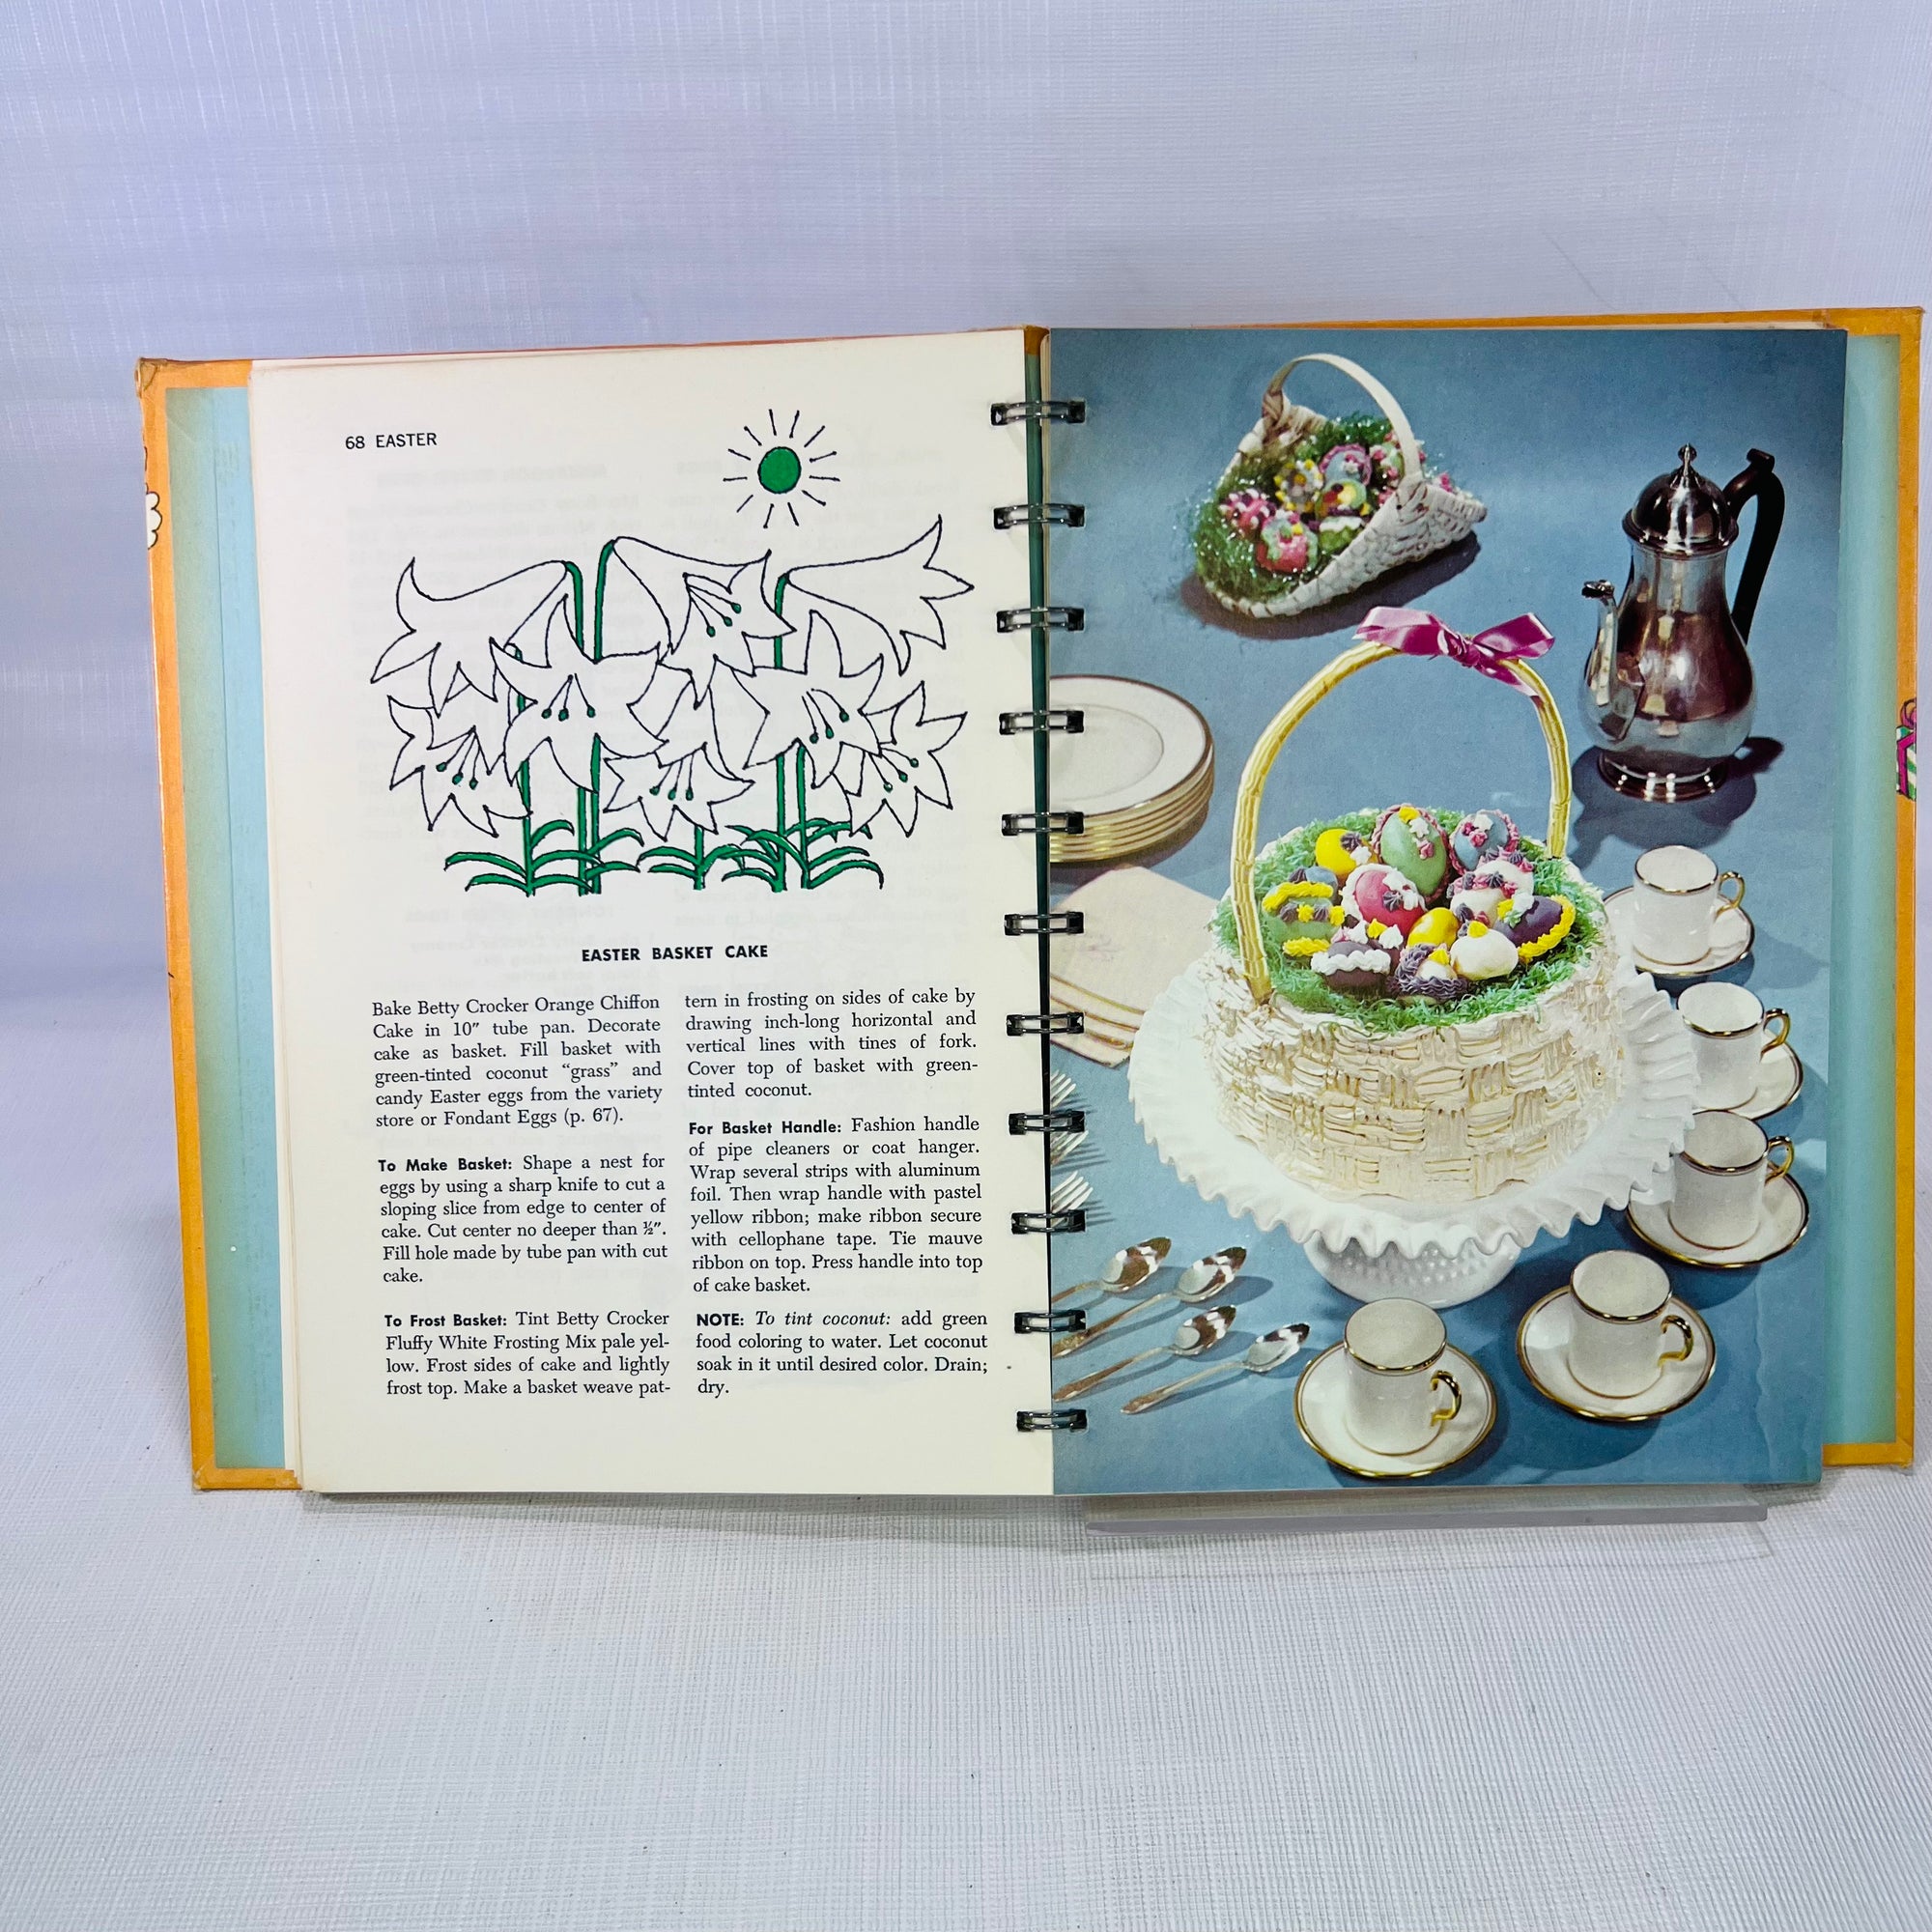 Betty Crocker Party Book by General Mills 1960 Western Printing Vintage Cookbook